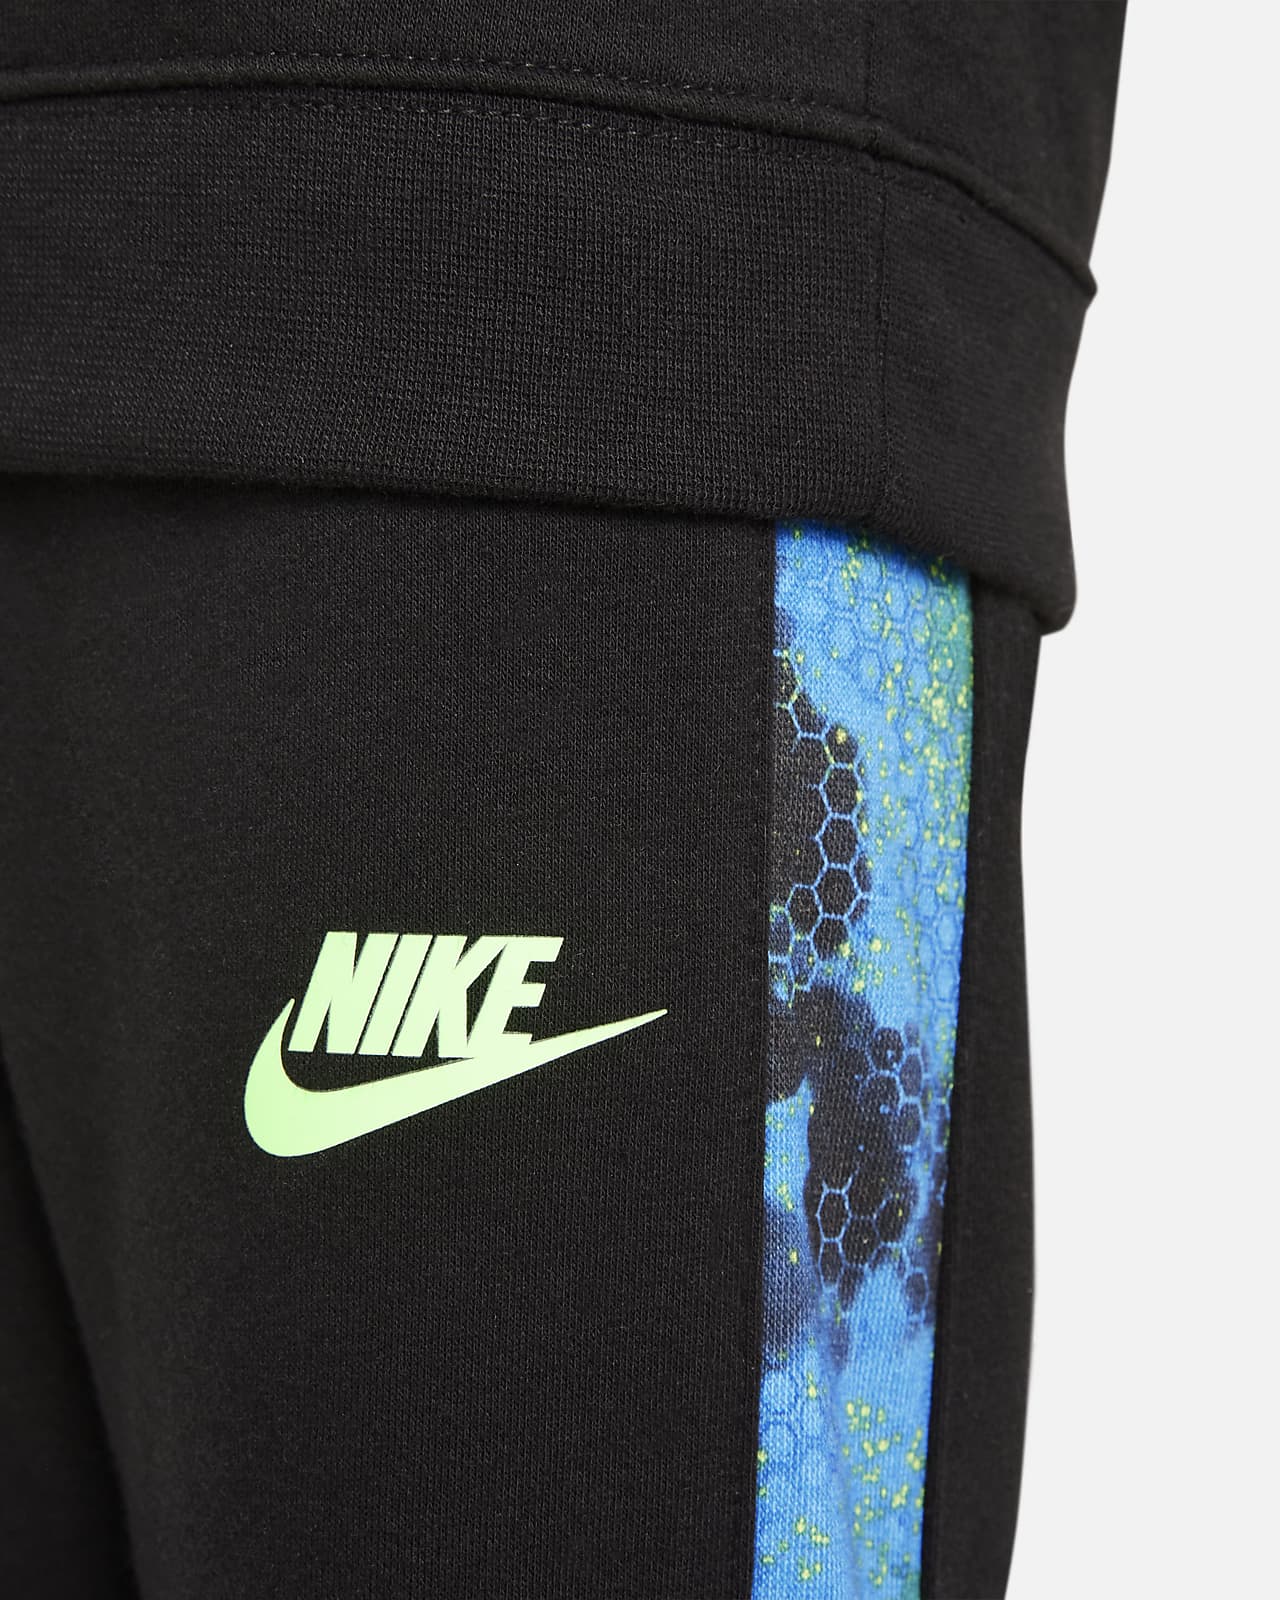 Nike Toddler Sweatshirt and Set. Pants